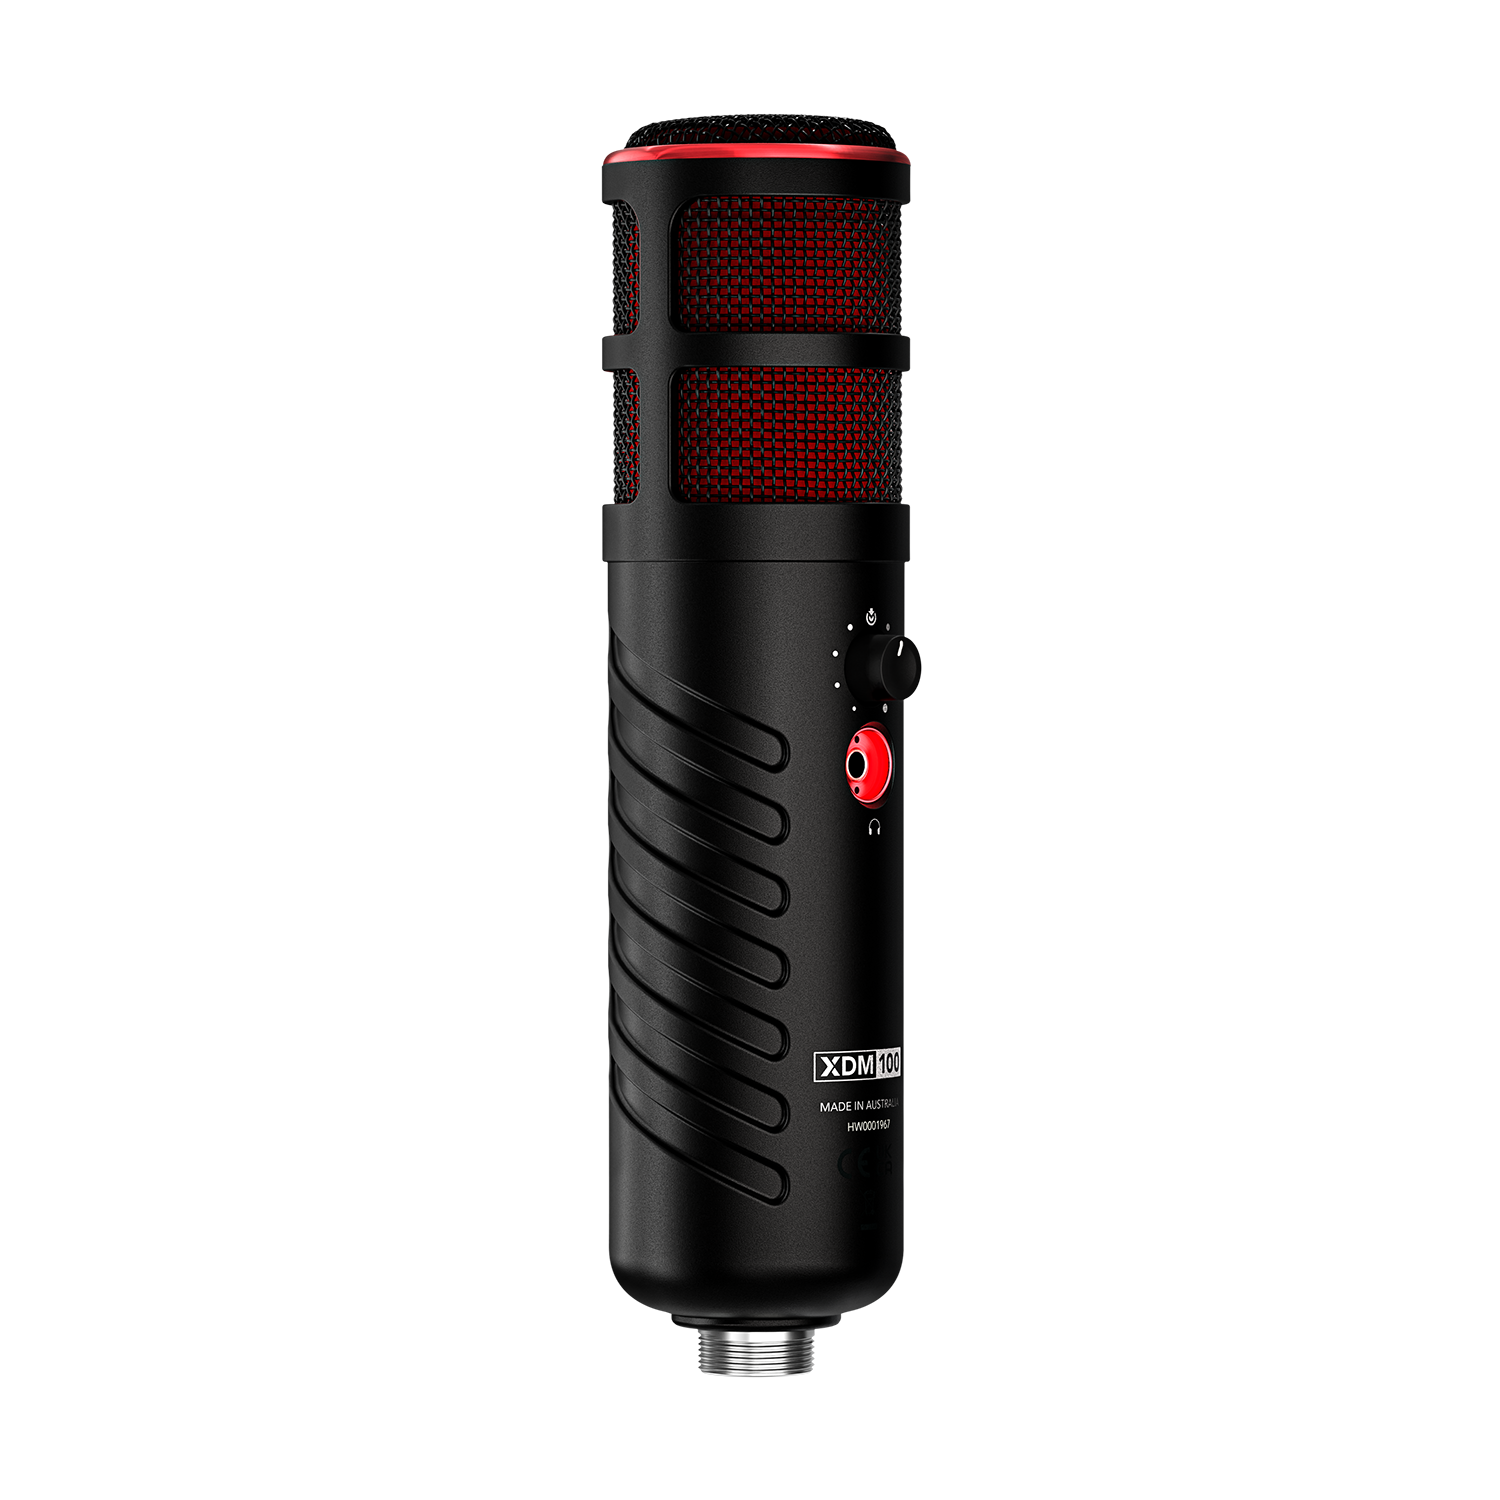 Rode XDM100 Microphone USB dynamique professionnel